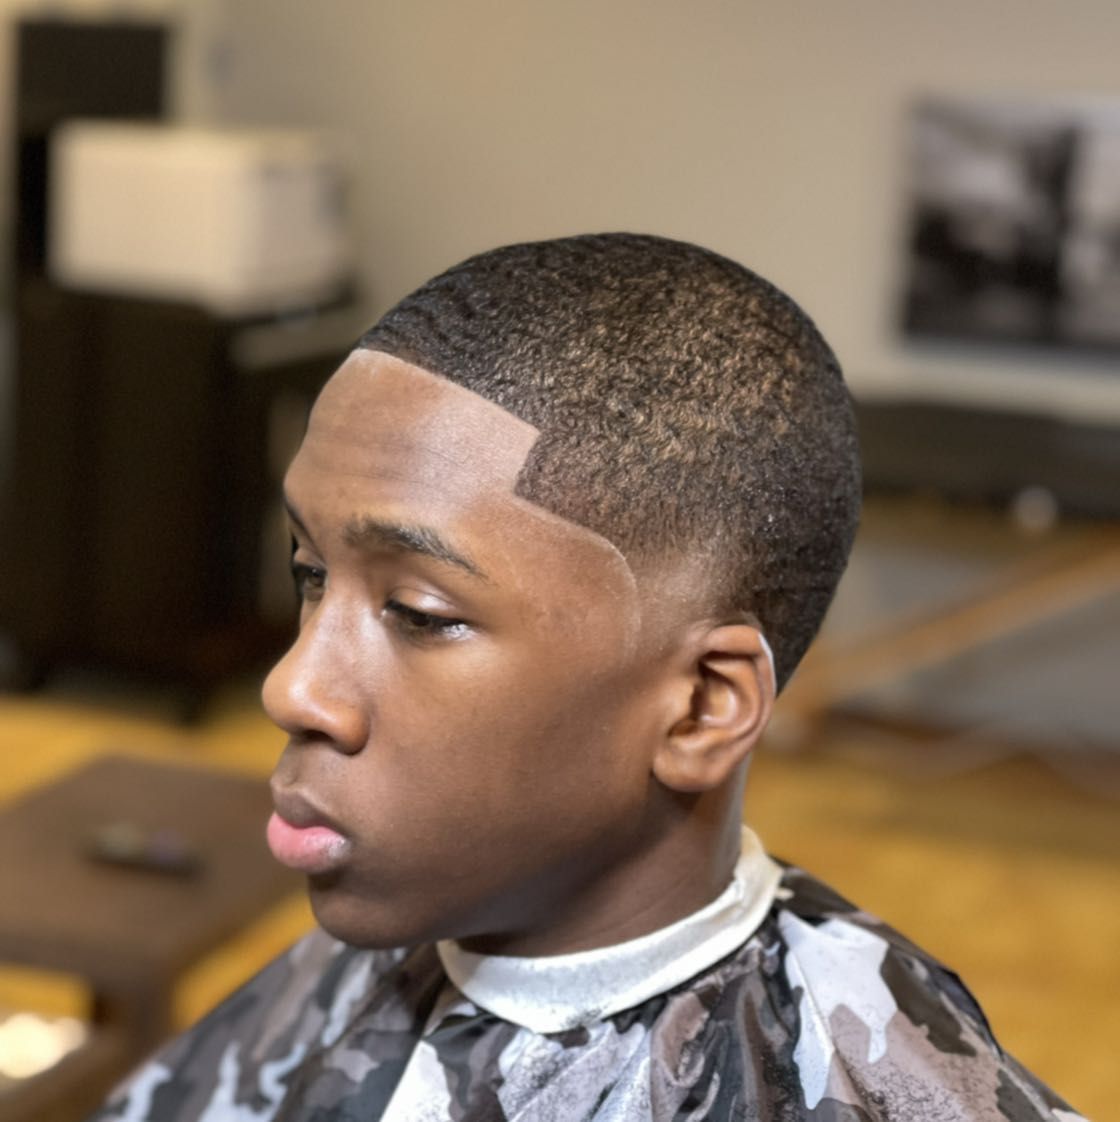 Men's Walk-In Haircuts 5 Star Rating